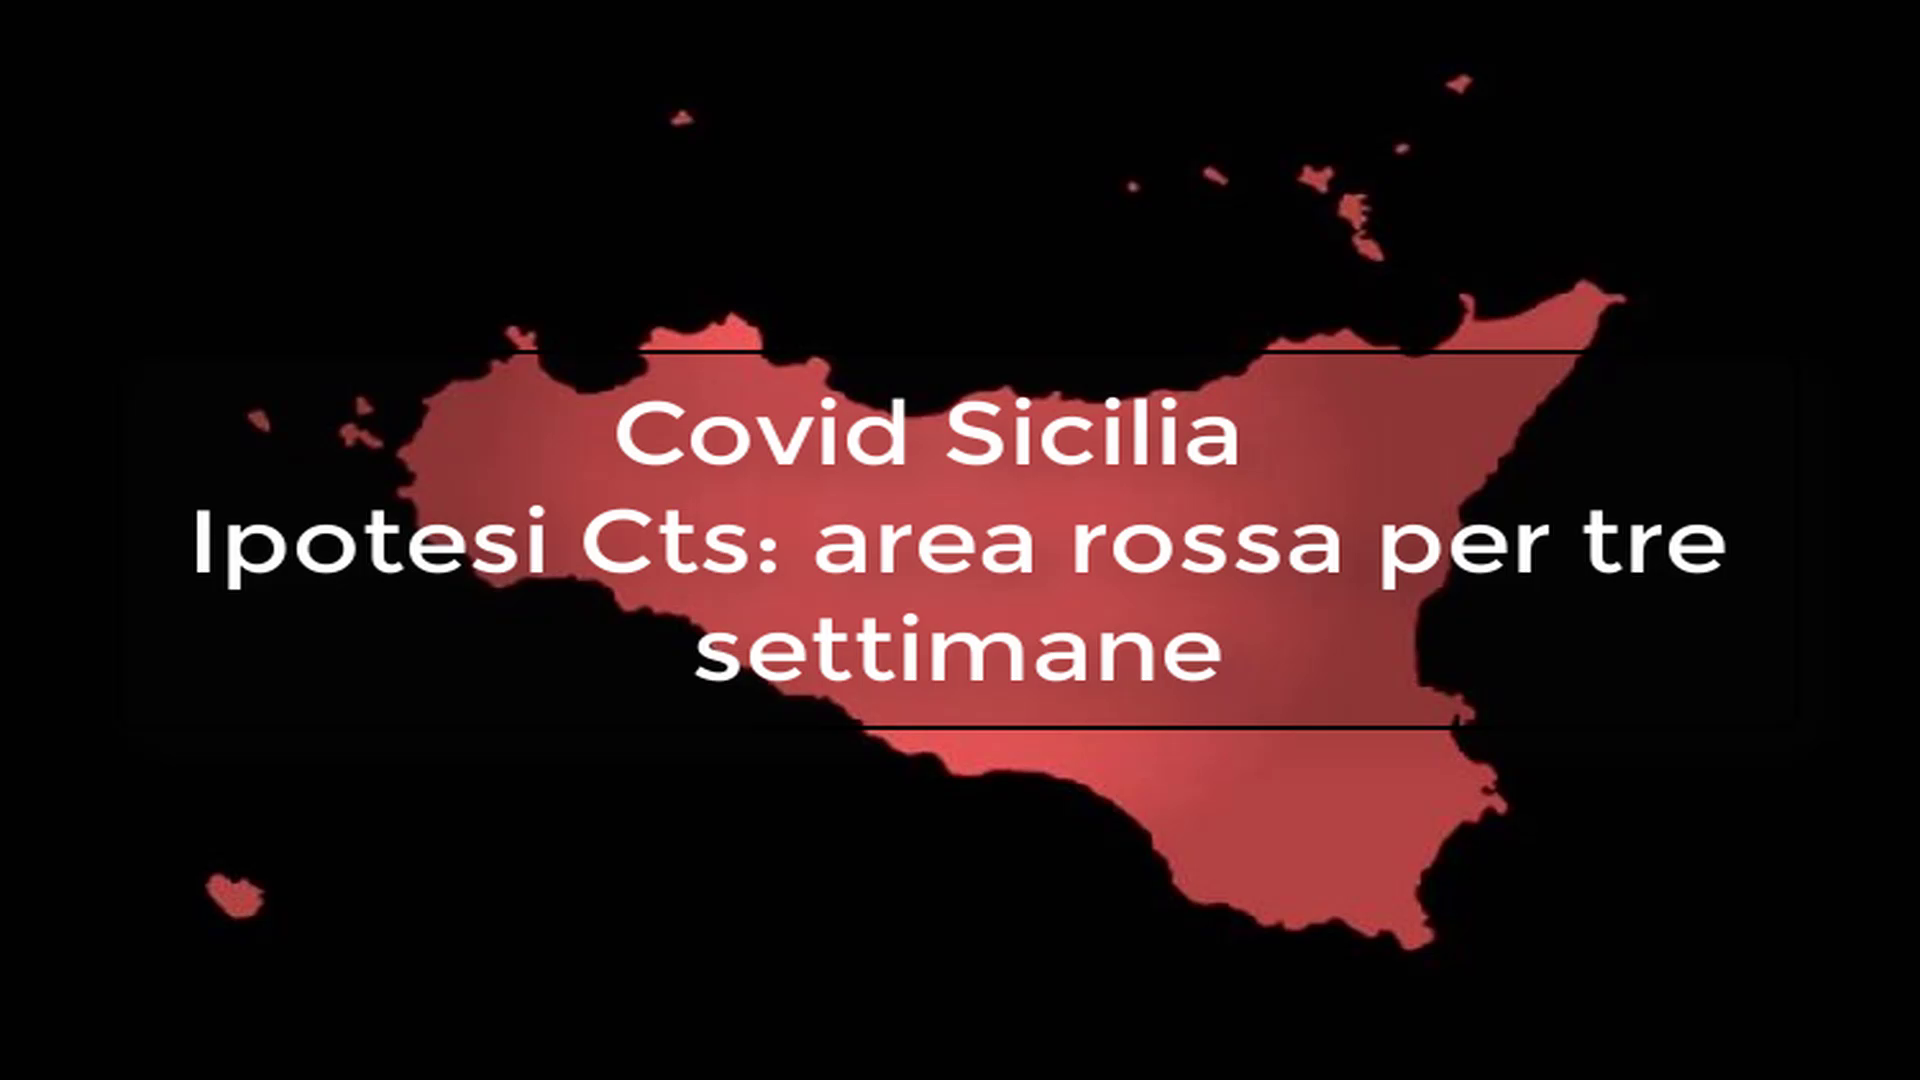 Covid Sicilia – Ipotesi Cts: area rossa per tre settimane